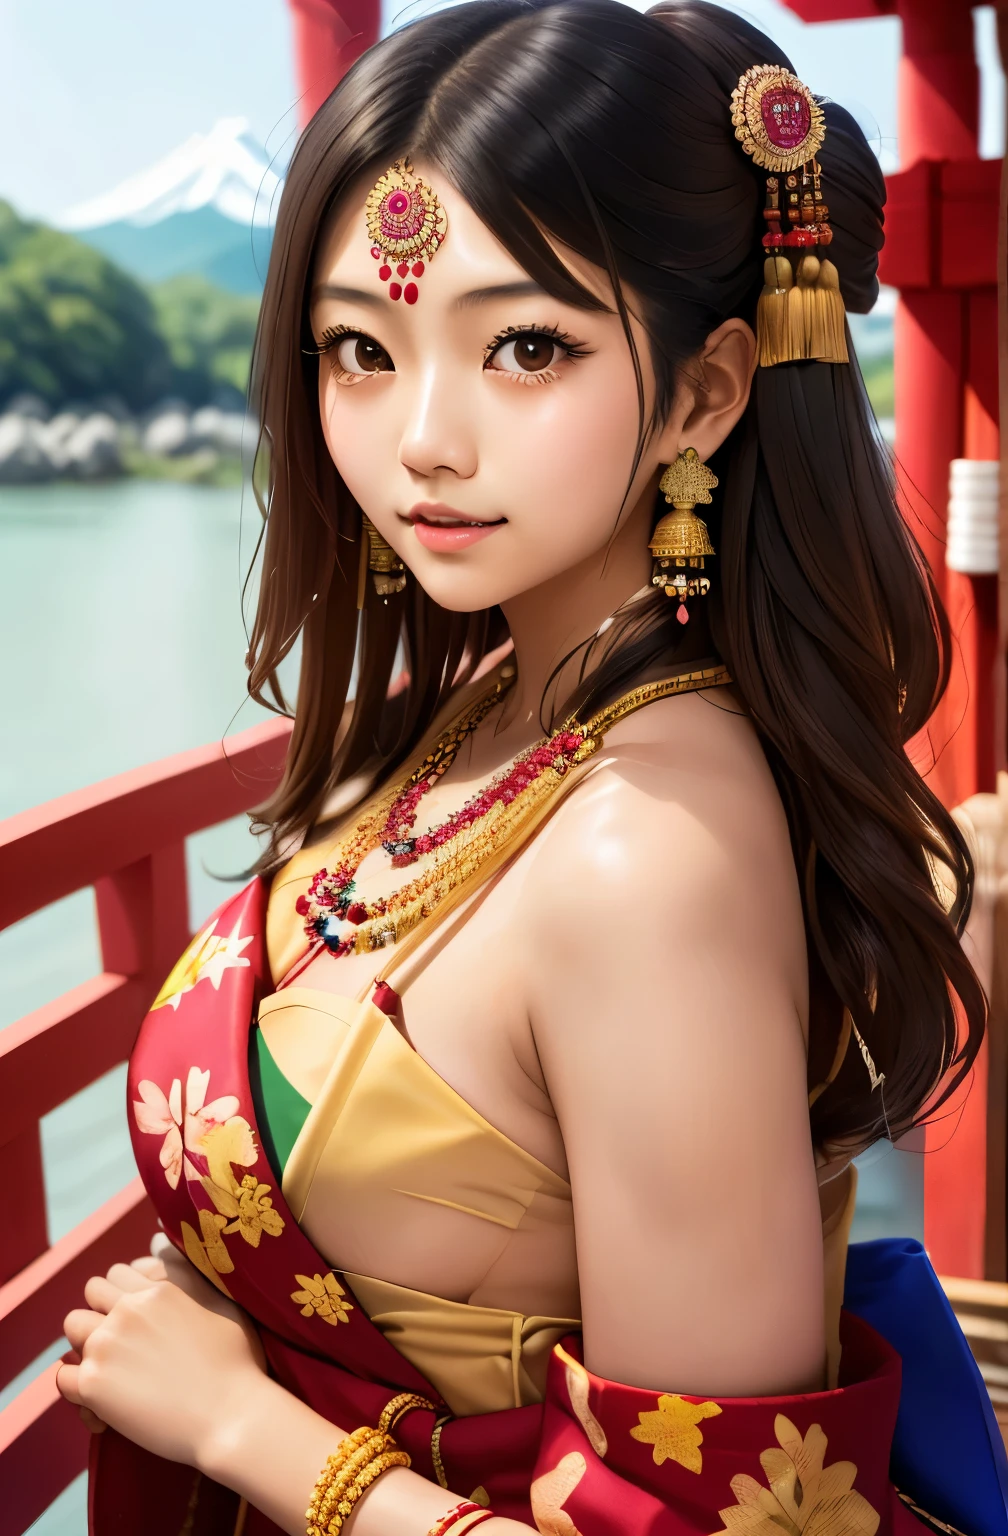 戴著印度珠寶的日本女孩, 完美的裸體裸體, 鮑伯尺寸 (1.6)